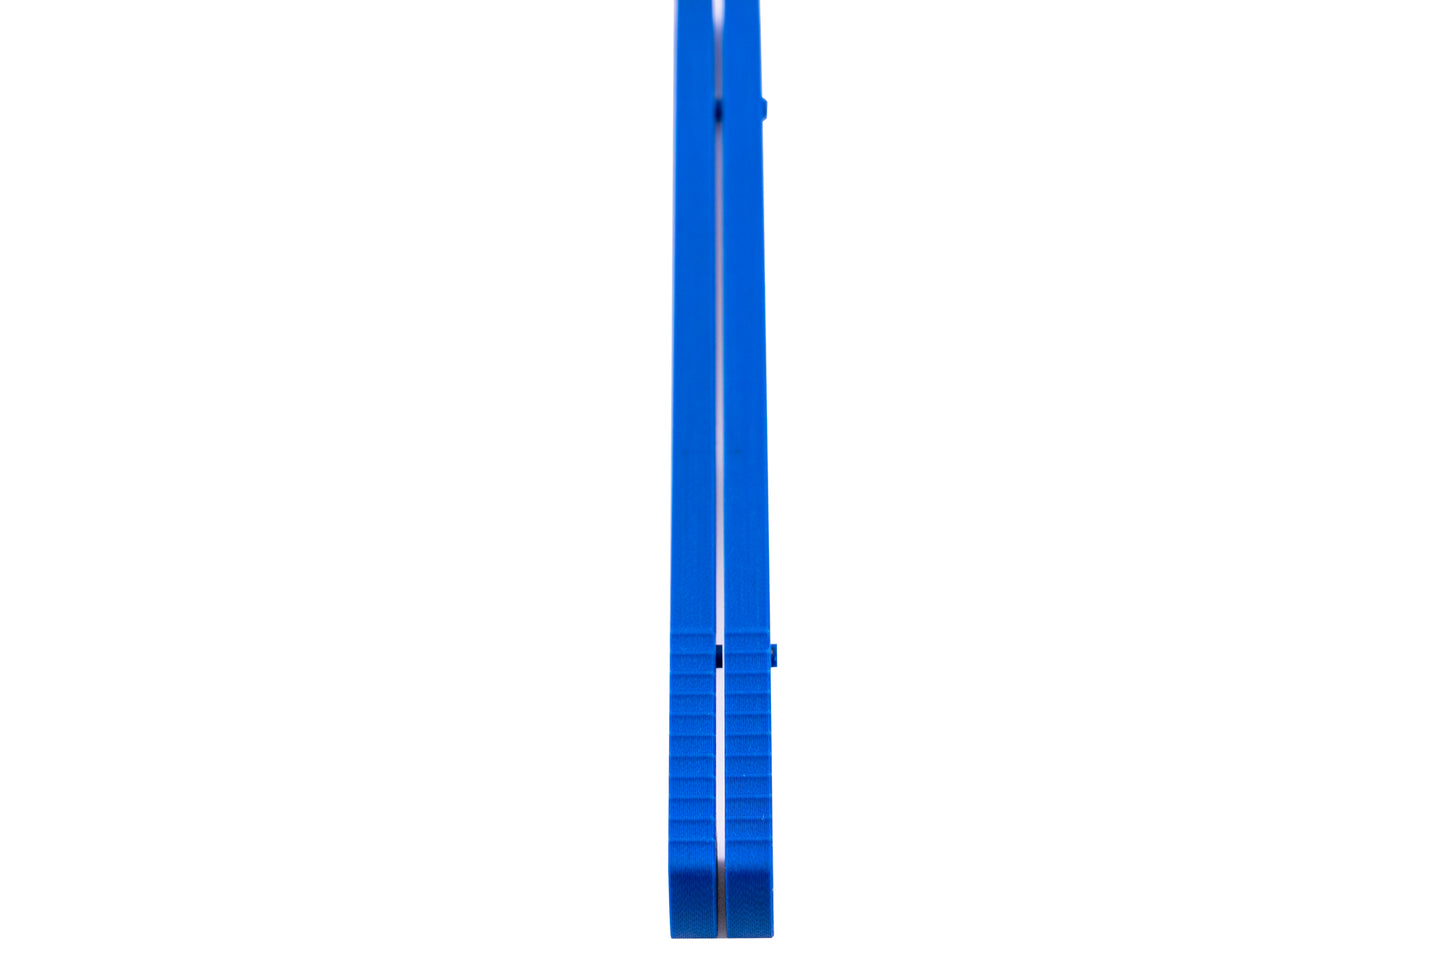 Hydro Blue G10 Full Length Spacer Jimping